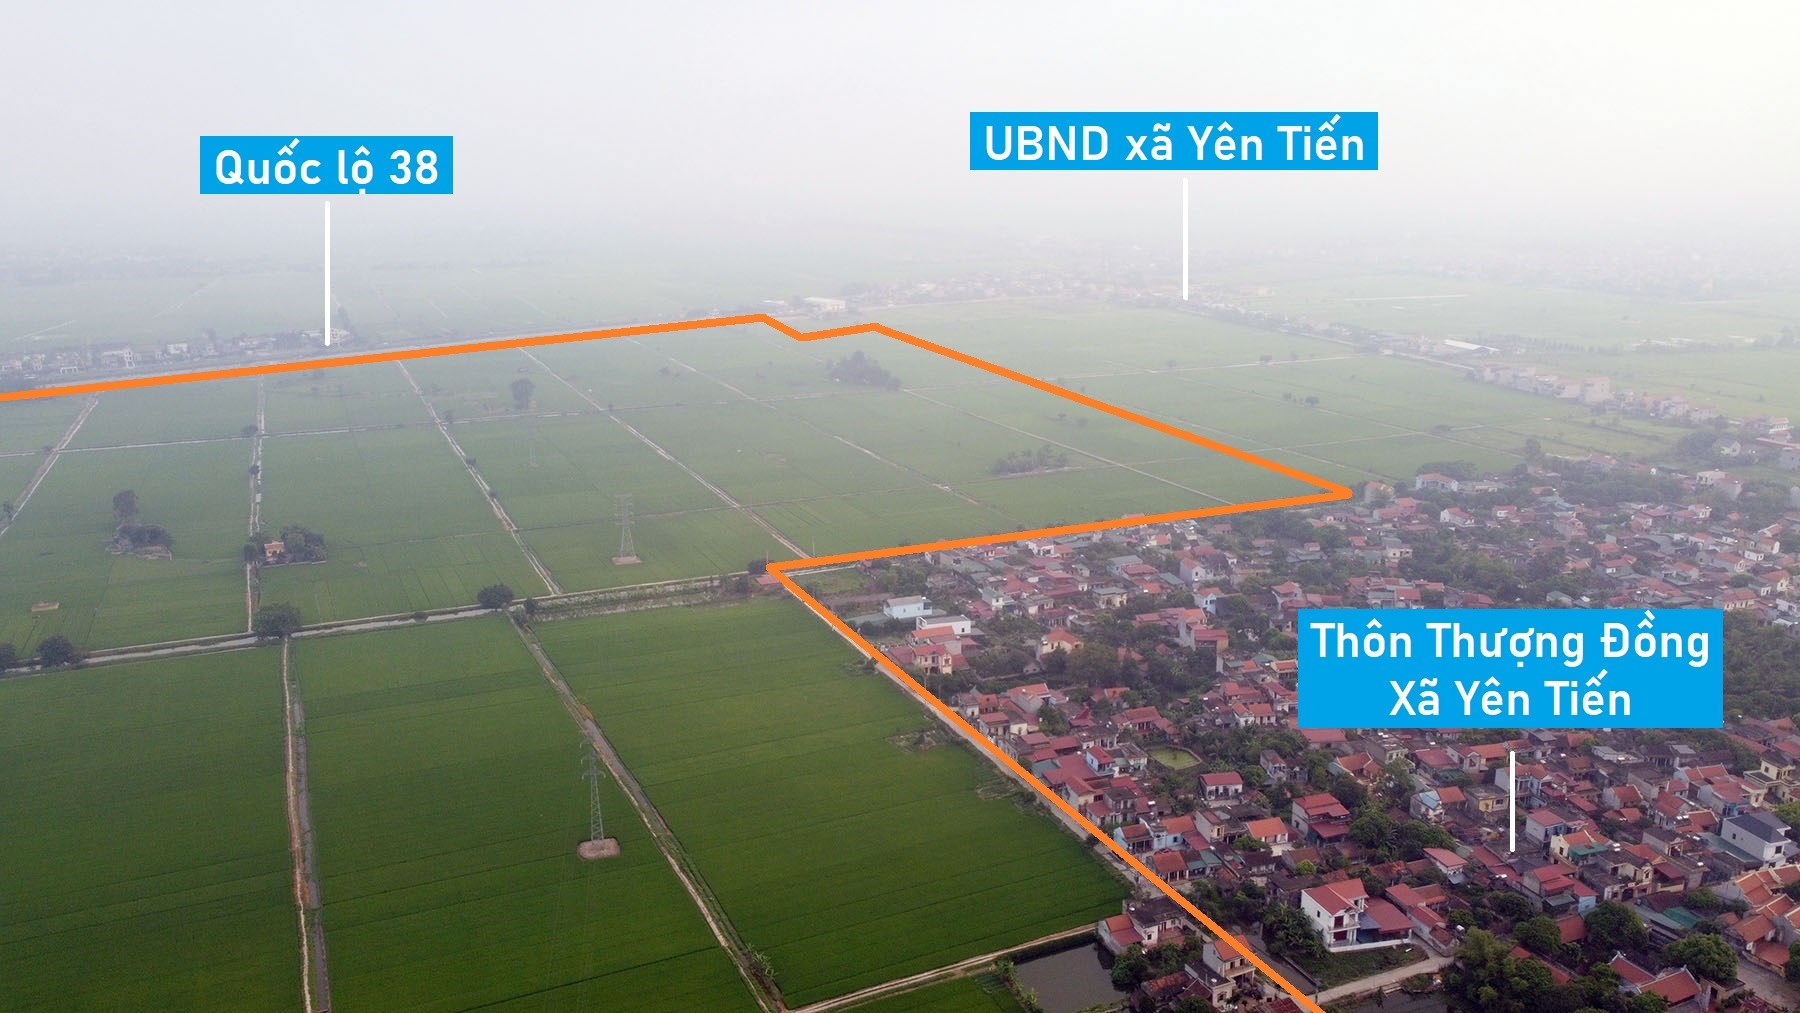 Toàn cảnh vị trí quy hoạch KCN Hồng Tiến ở nút giao cao tốc Cầu Giẽ - Ninh Bình và trục phát triển kinh tế biển Nam Định